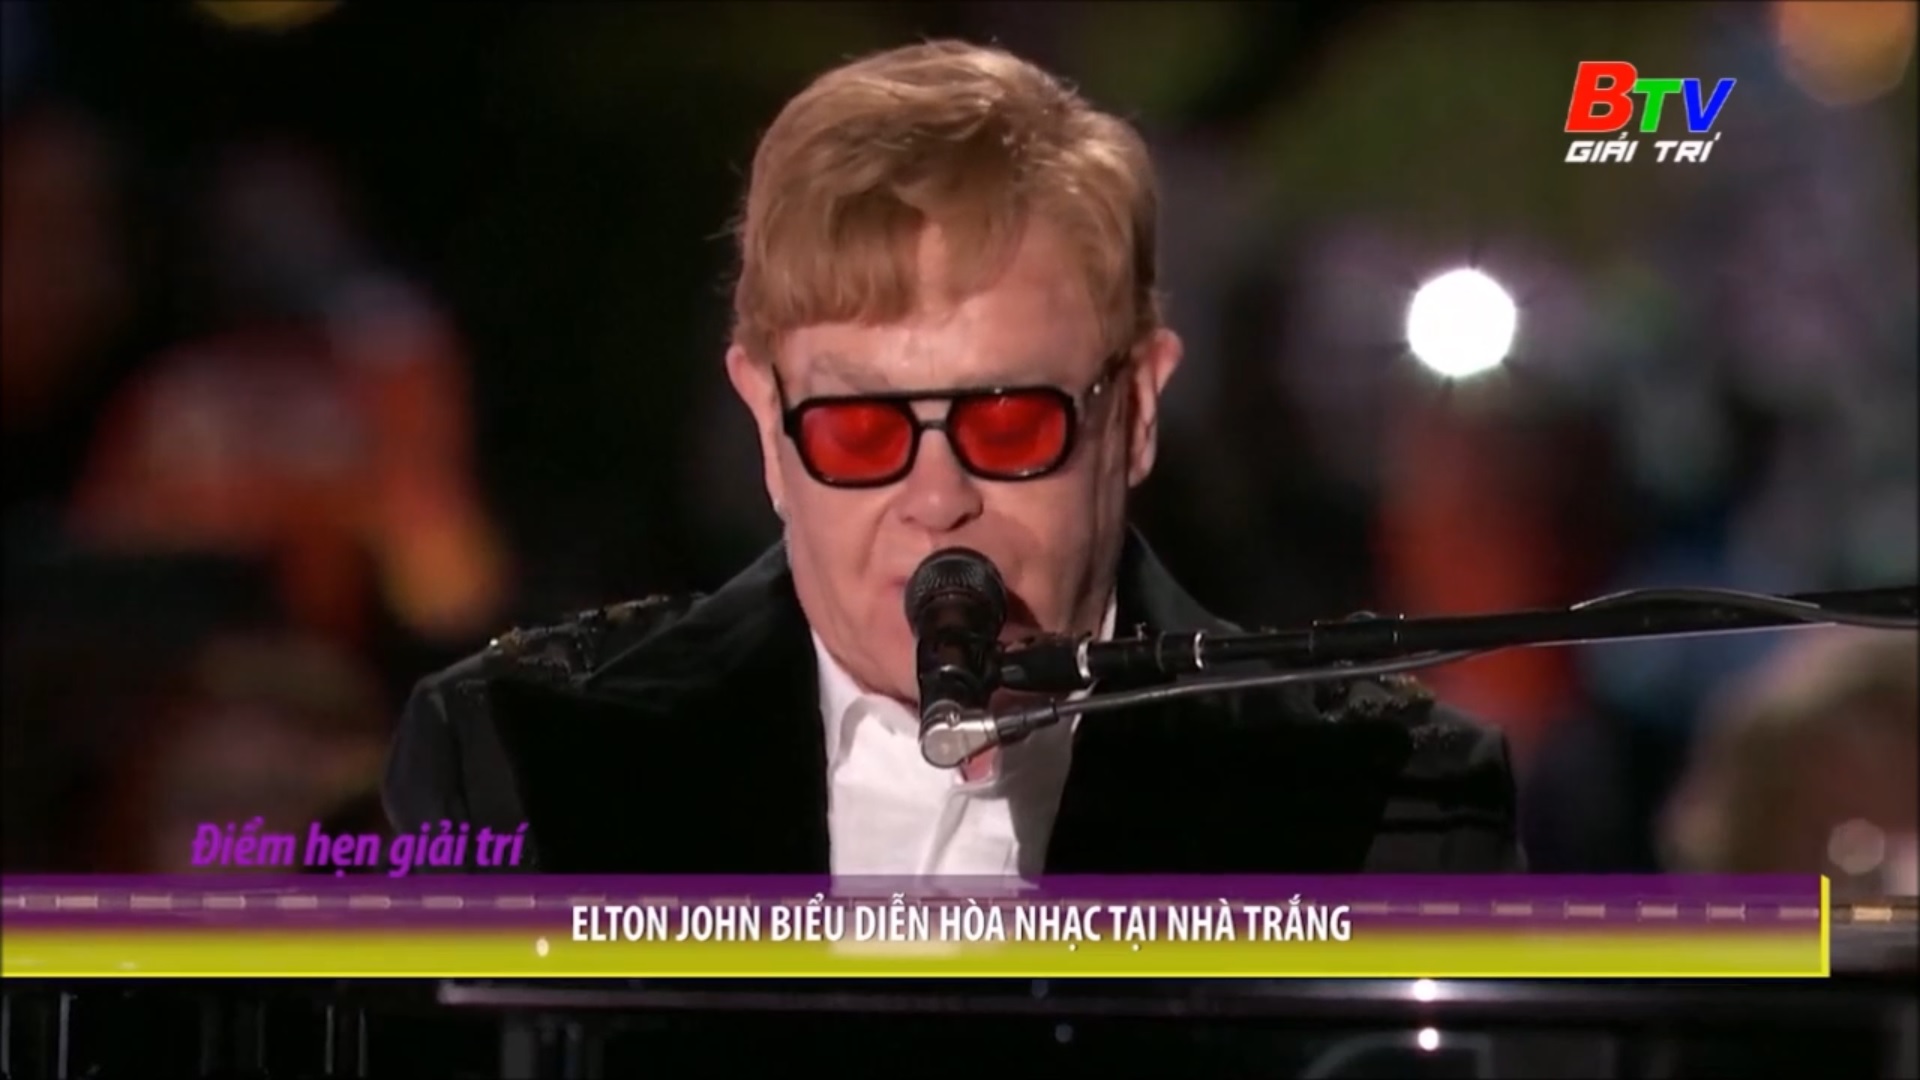 Elton John biểu diễn hòa nhạc tại Nhà Trắng